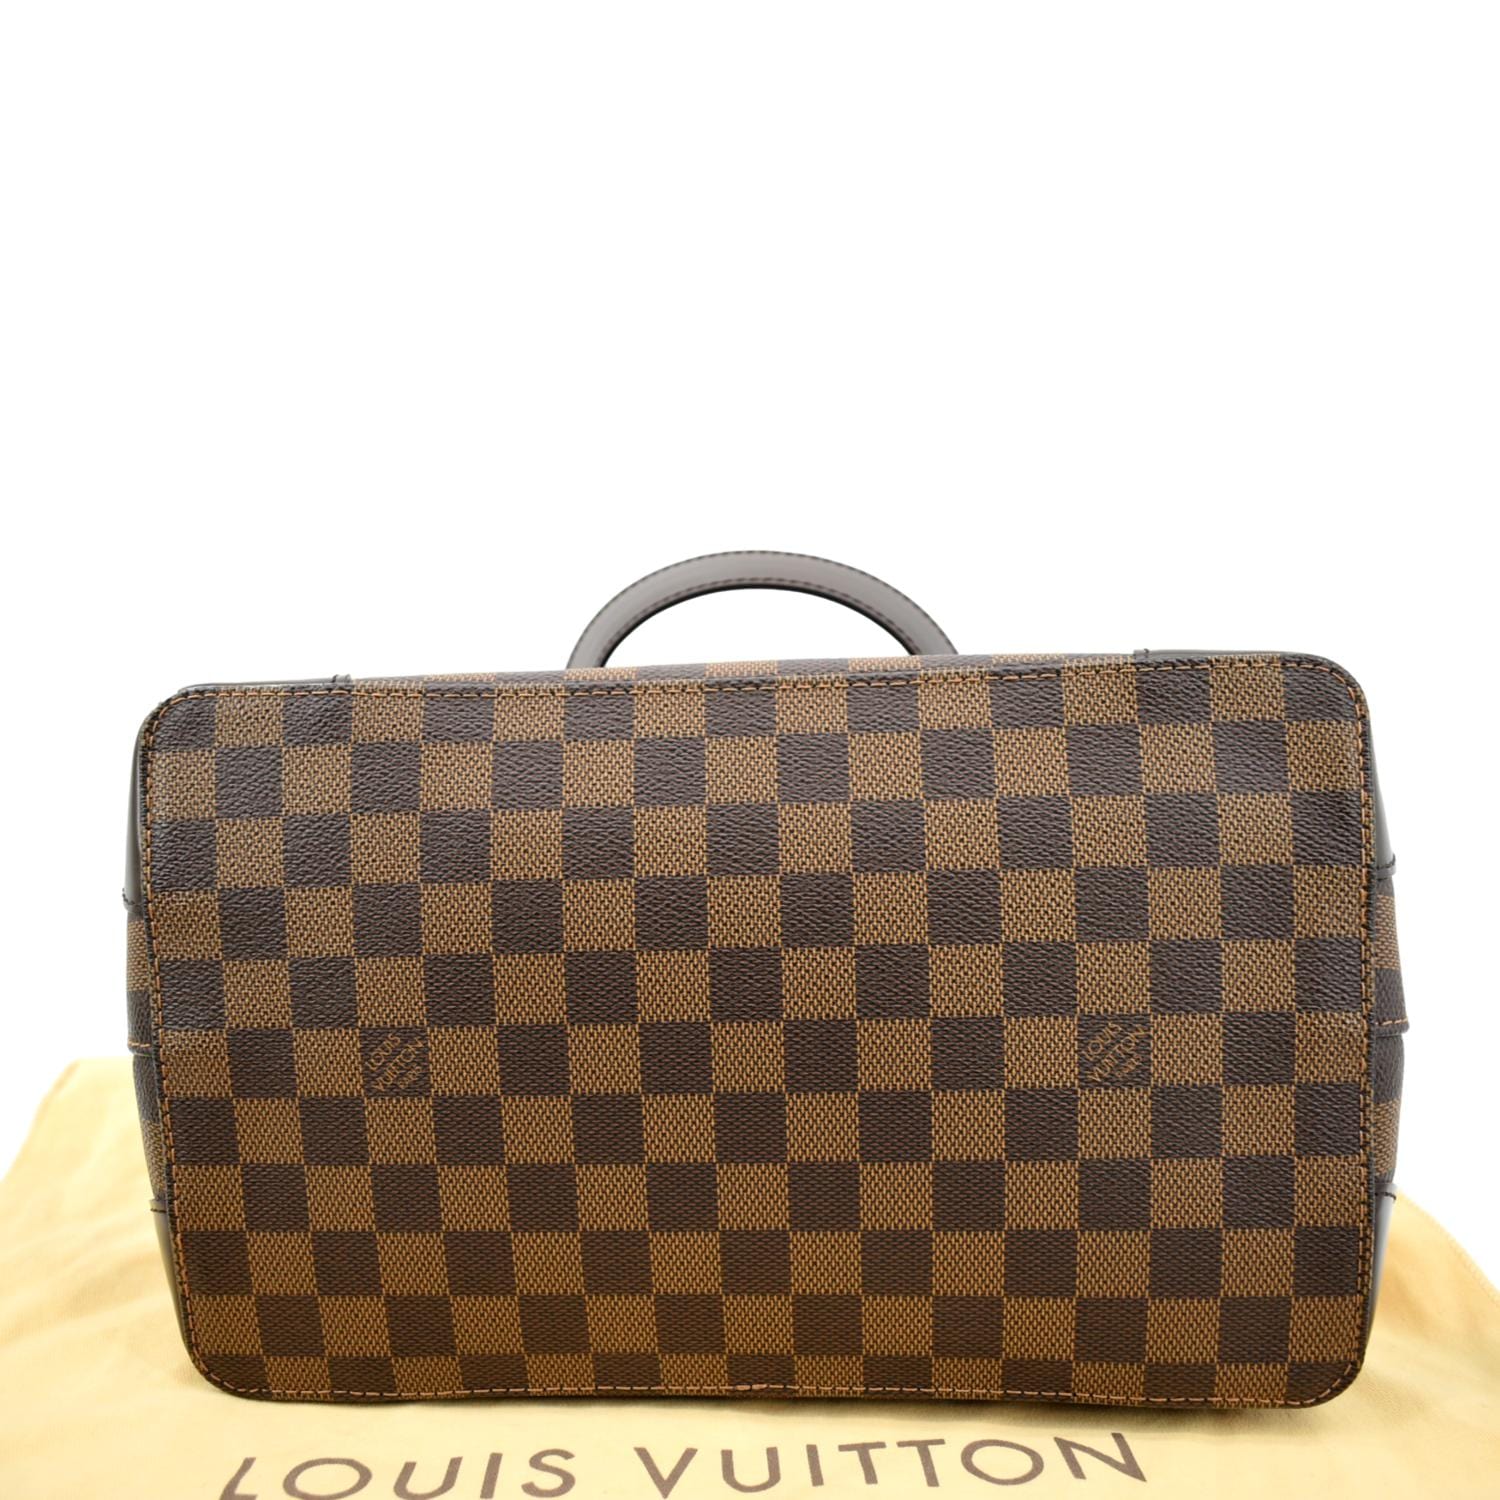 Hampstead GM LOUIS VUITTON bag - VALOIS VINTAGE PARIS